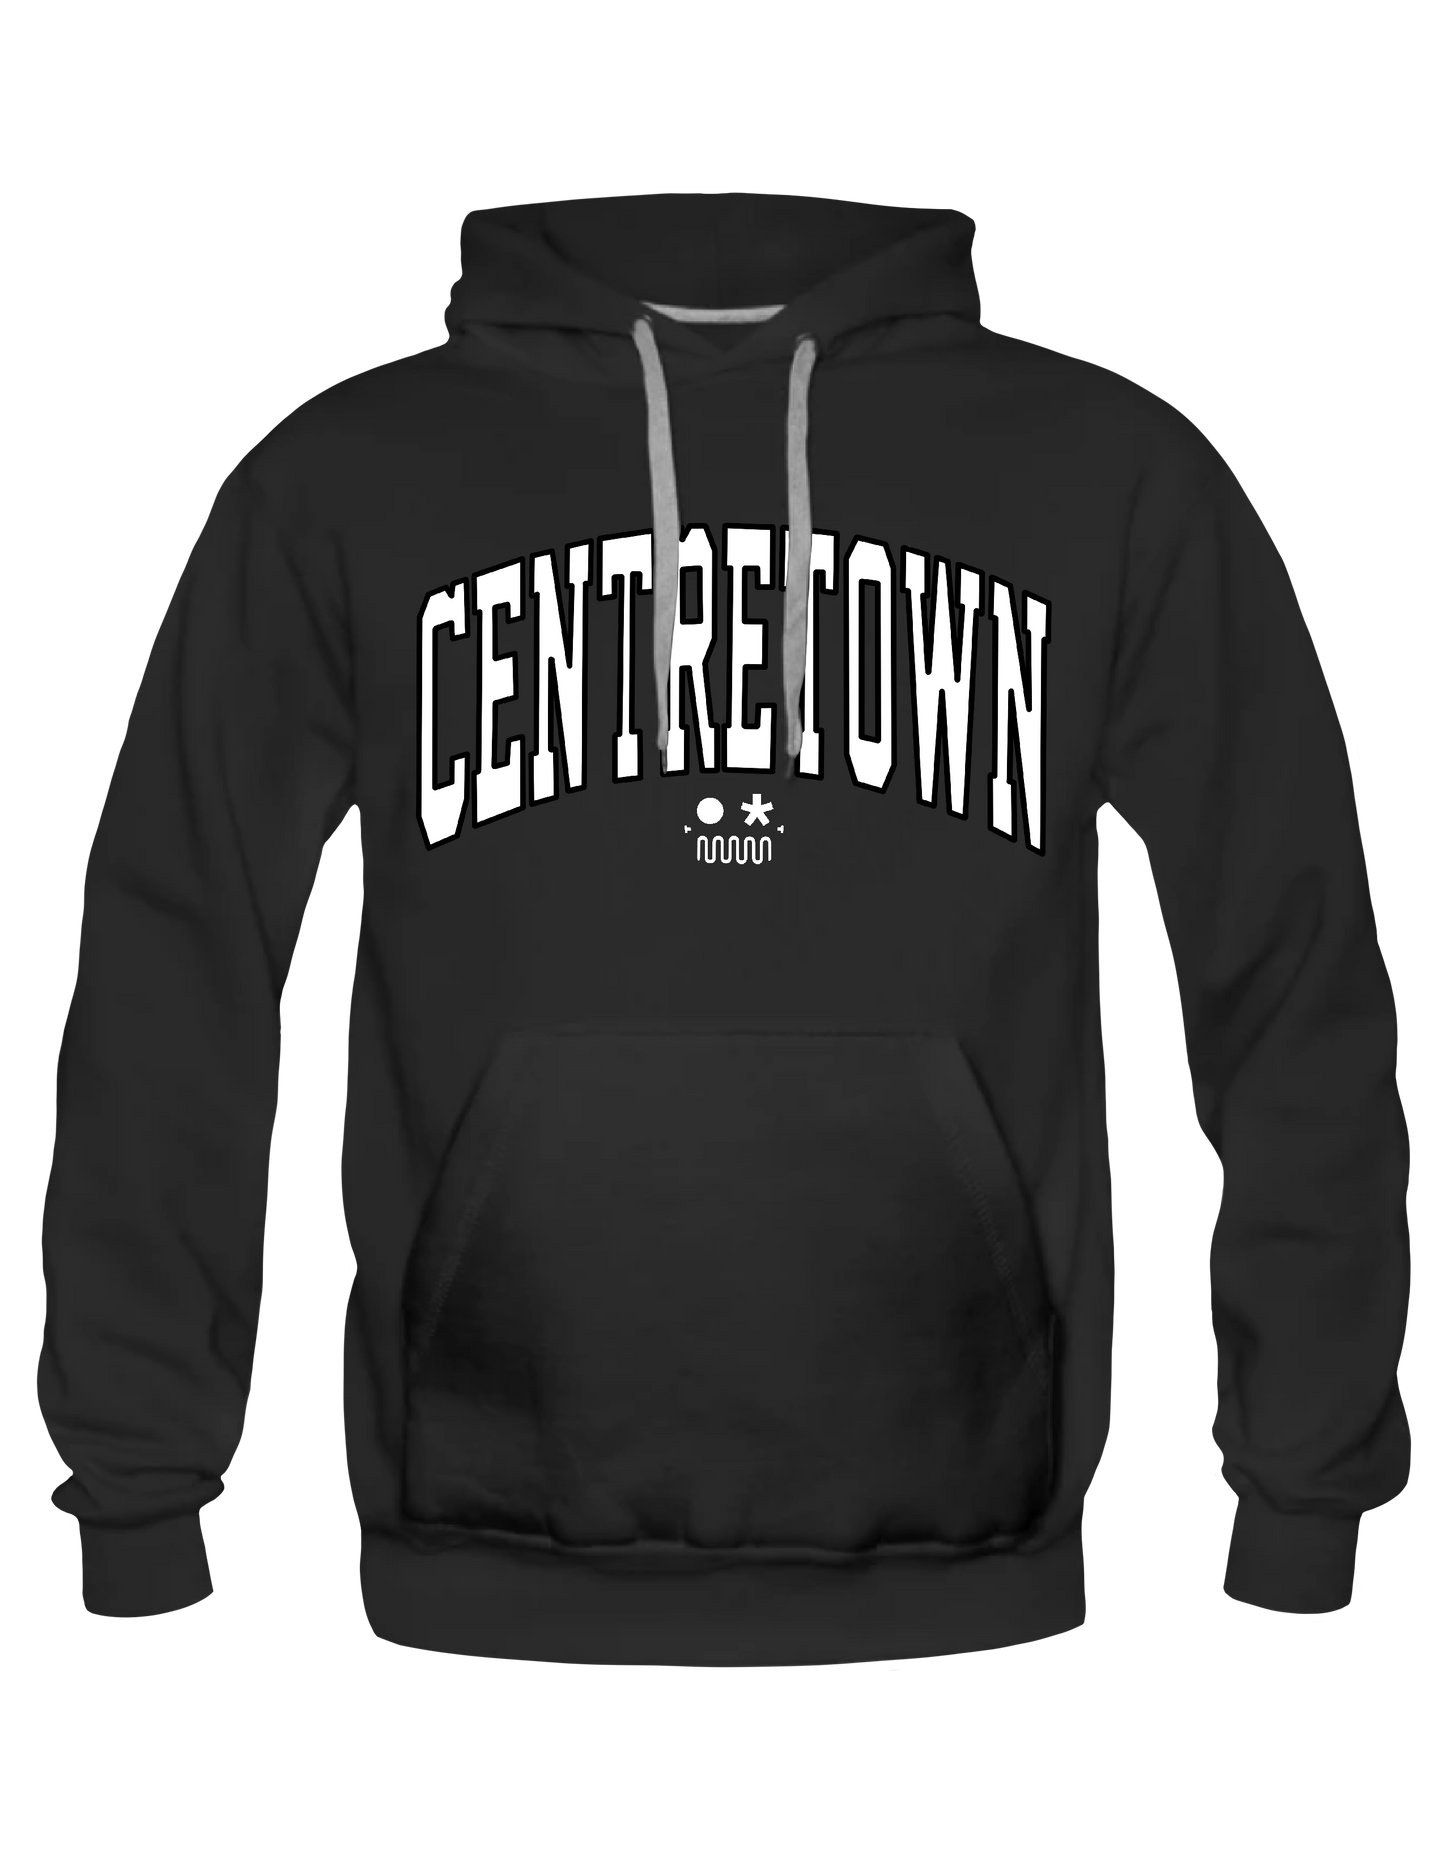 CENTRETOWN* // OTTAWA Arch Logo - Hoodie by BOYSDONTDRAW